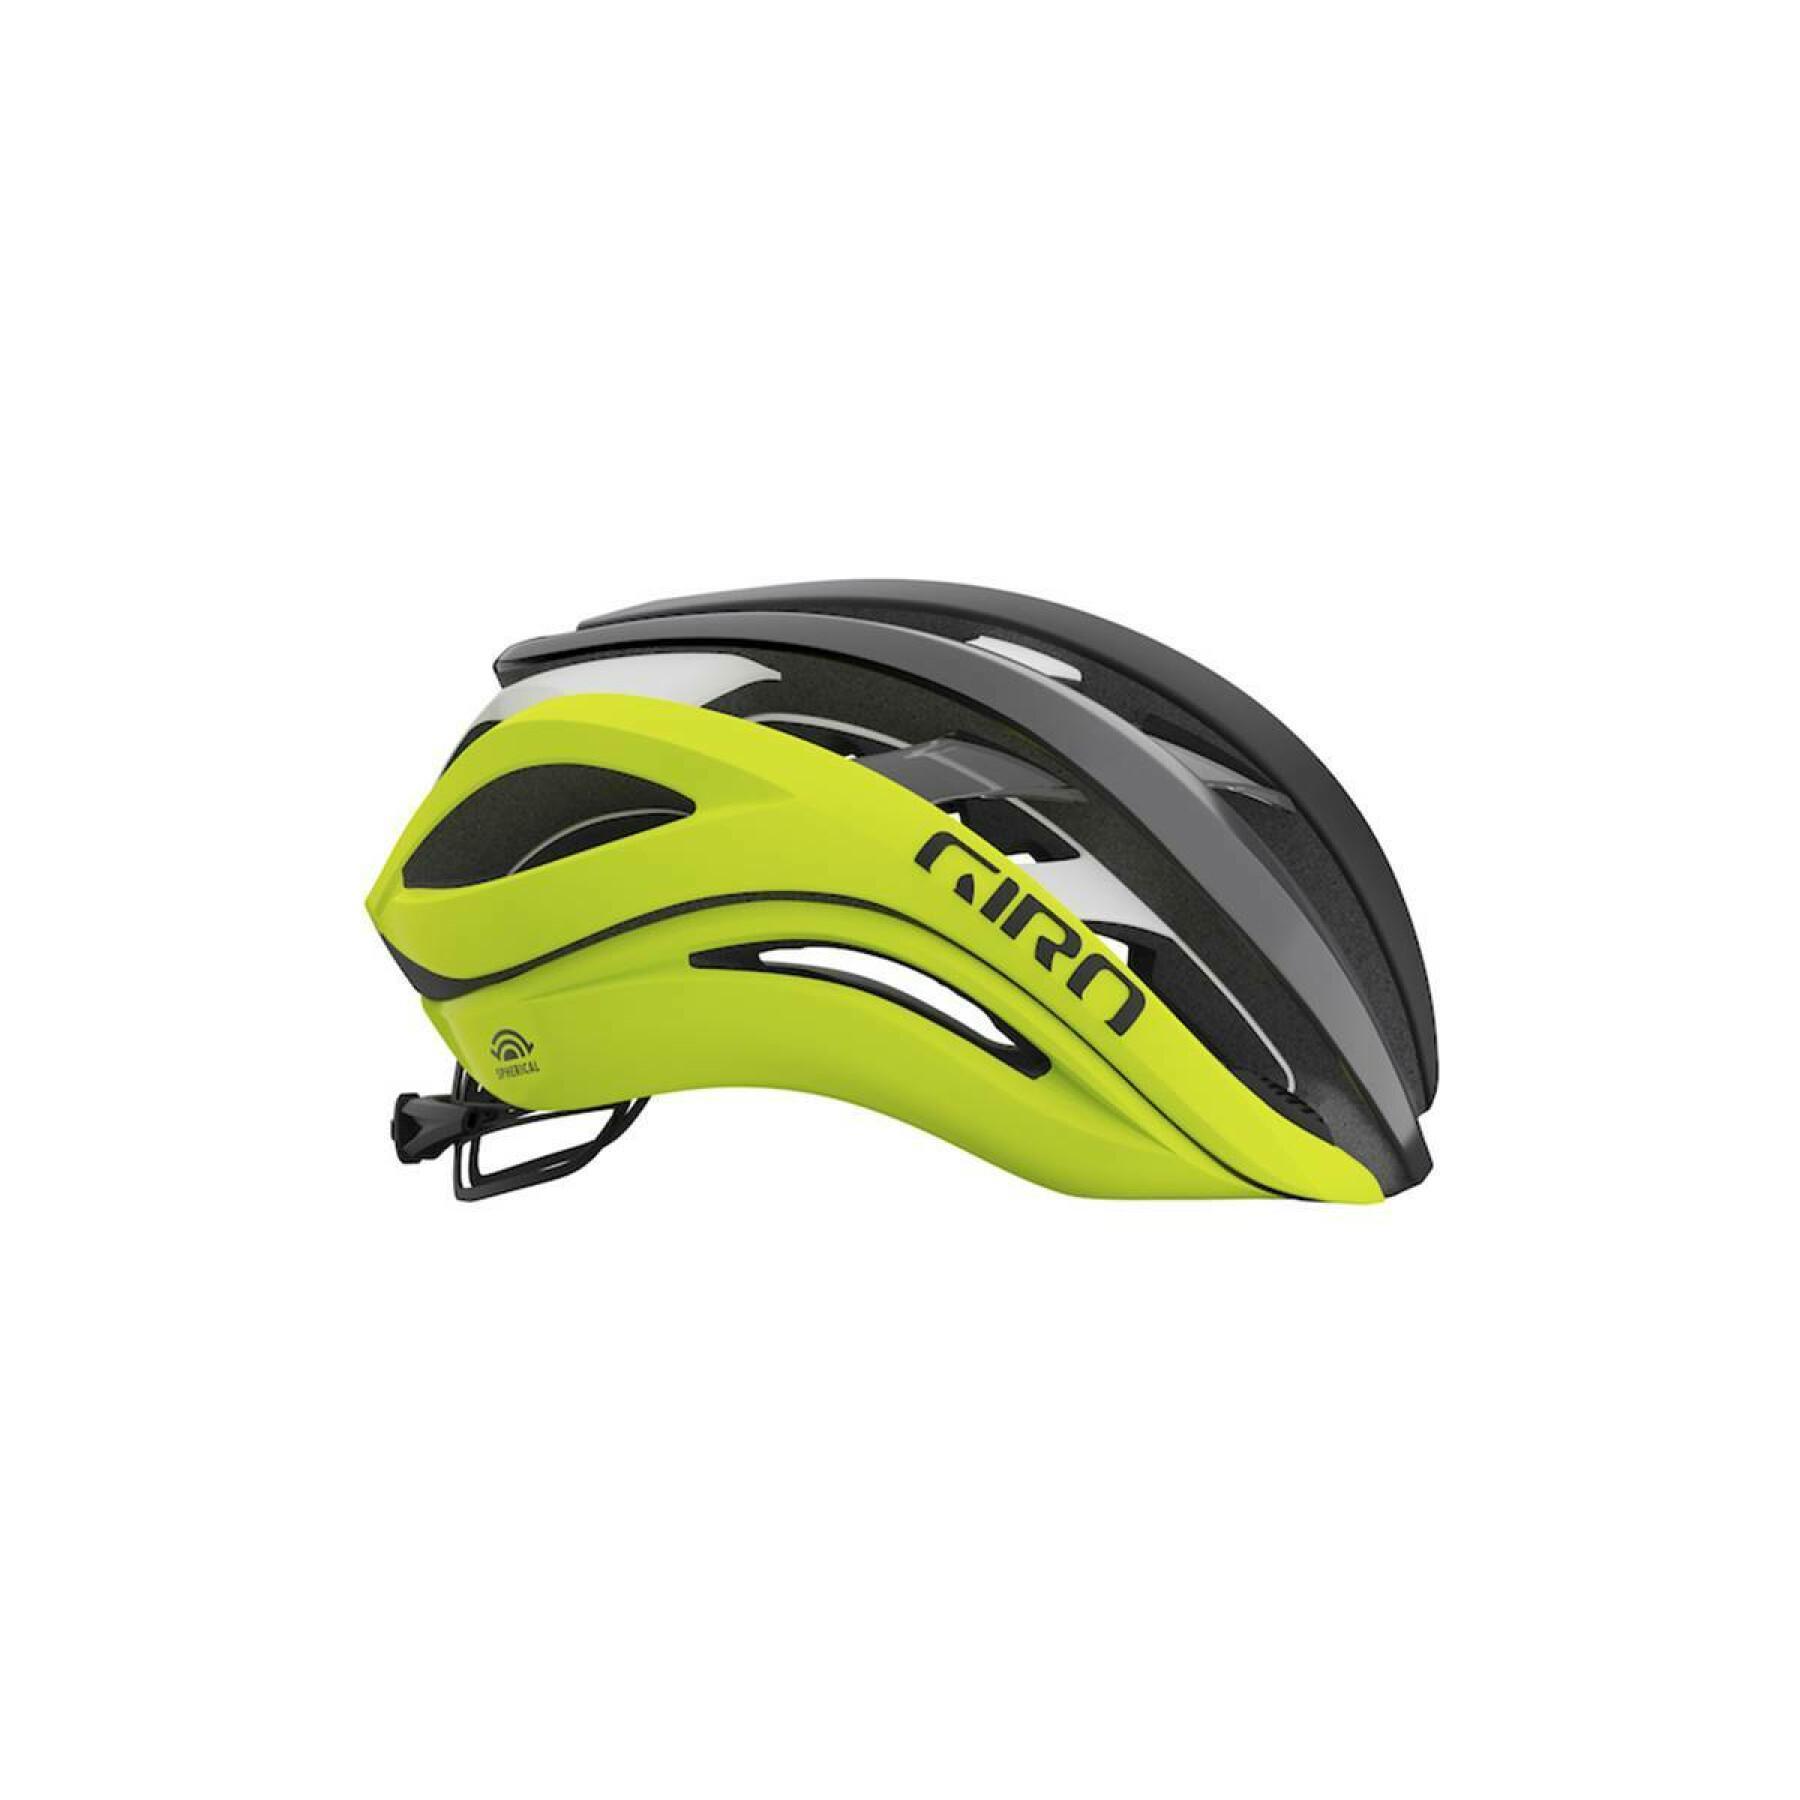 Bike helmet Giro Aether Mips